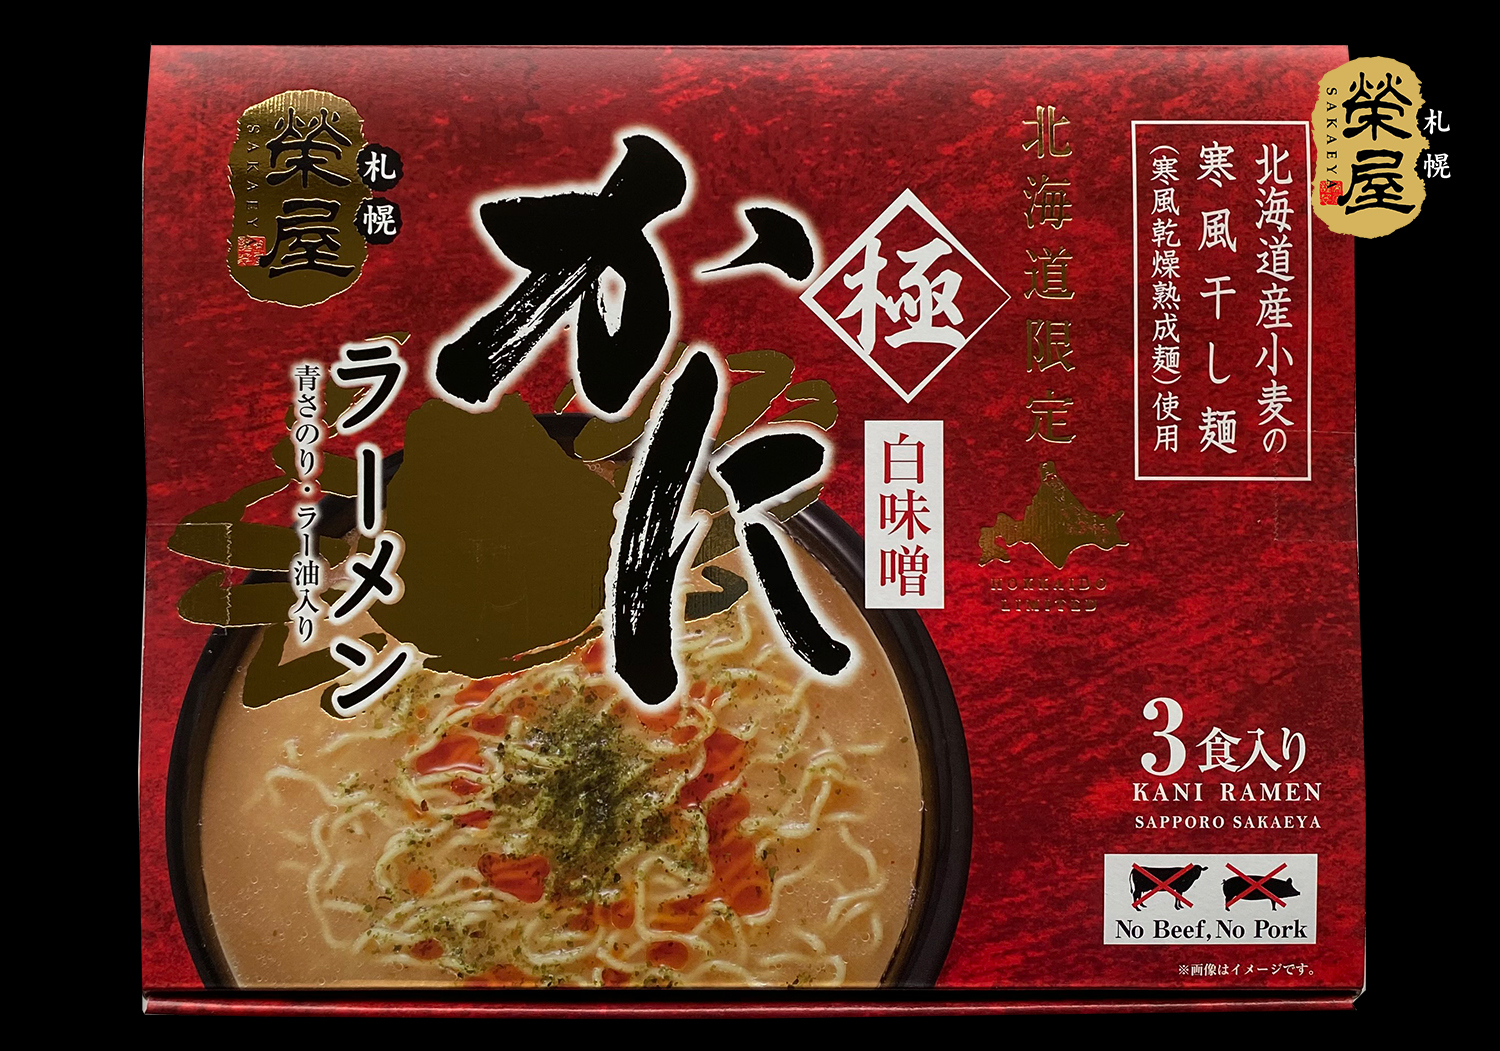 かにラーメン3食 2箱 常温 Sapporo Sakaeya Online Shop 榮屋の直営通販サイト